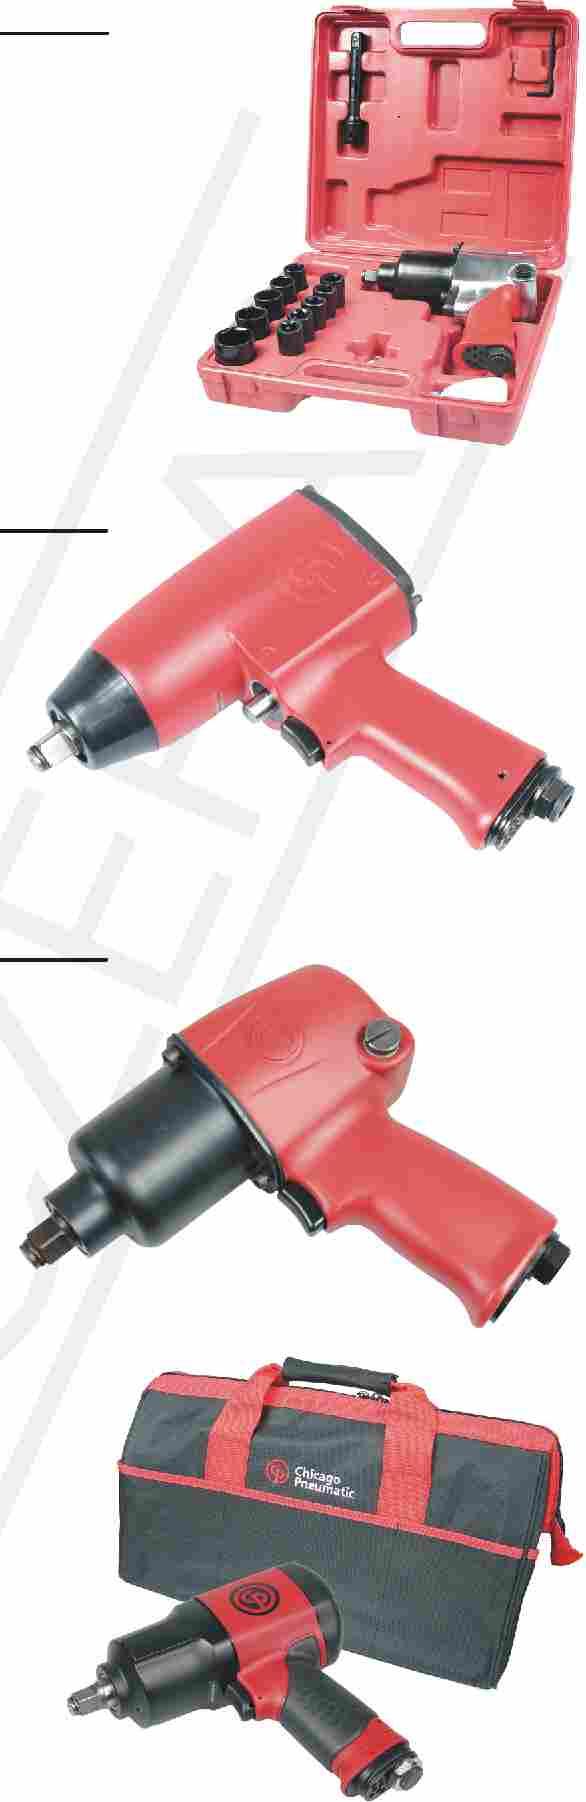 Narzędzia pneumatyczne / Pneumatic tools Klucz udarowo-pneumatyczny 1/2 ATS-2322 Pneumatic impact wrench 1/2 ATS-2322 Niezawodny klucz do odkręcania i dokręcania śrub mocujących koła pojazdów